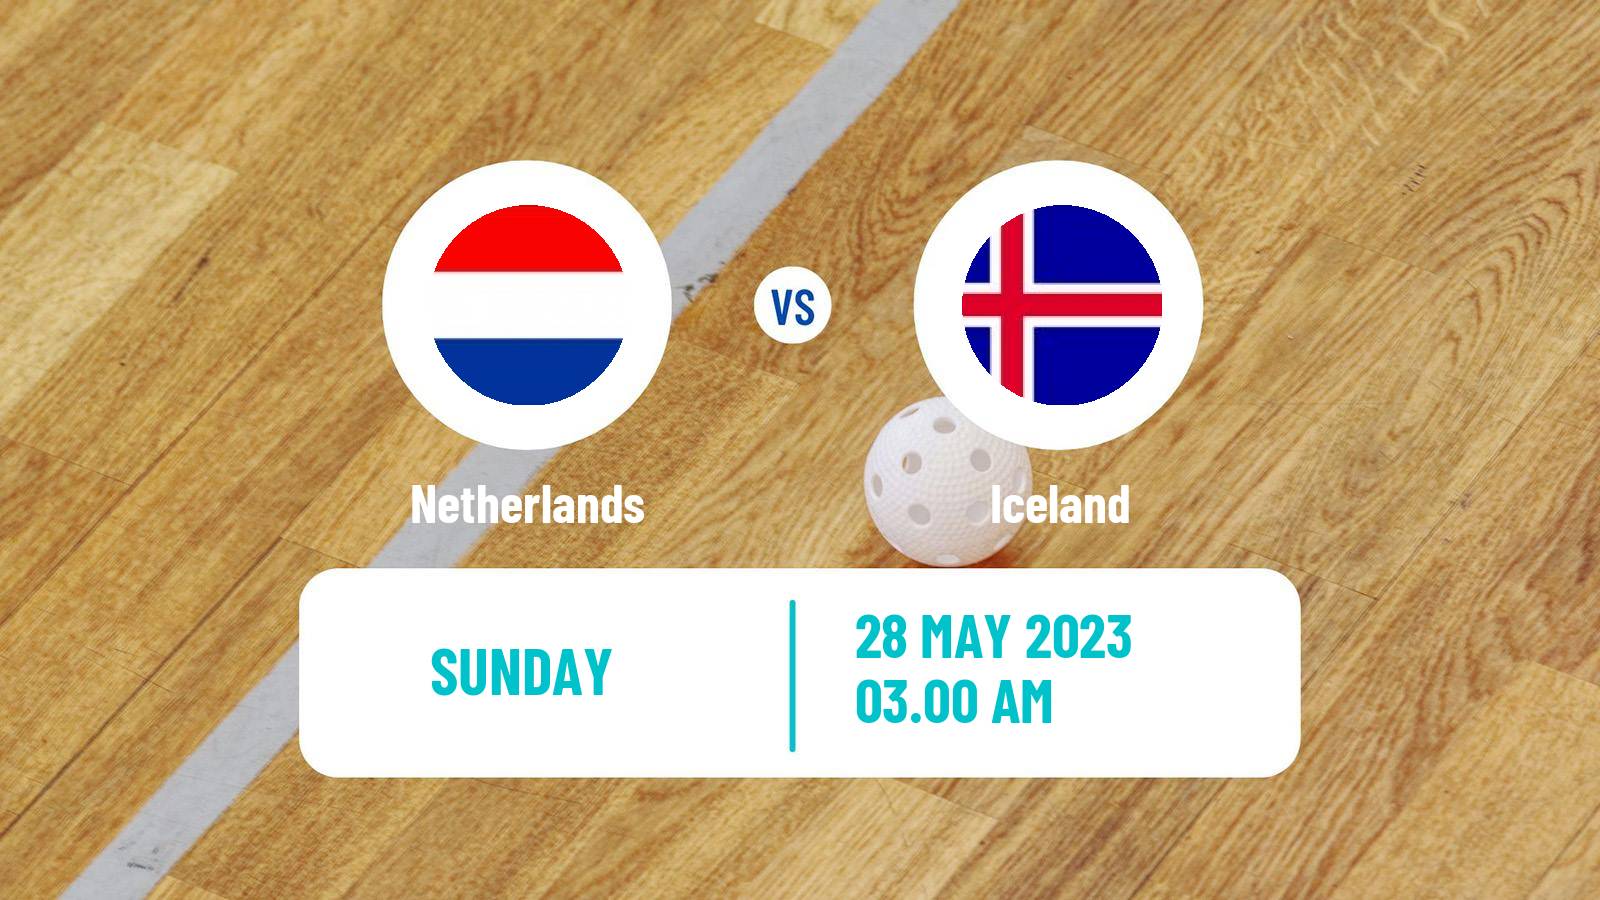 Floorball Friendly International Floorball Netherlands - Iceland